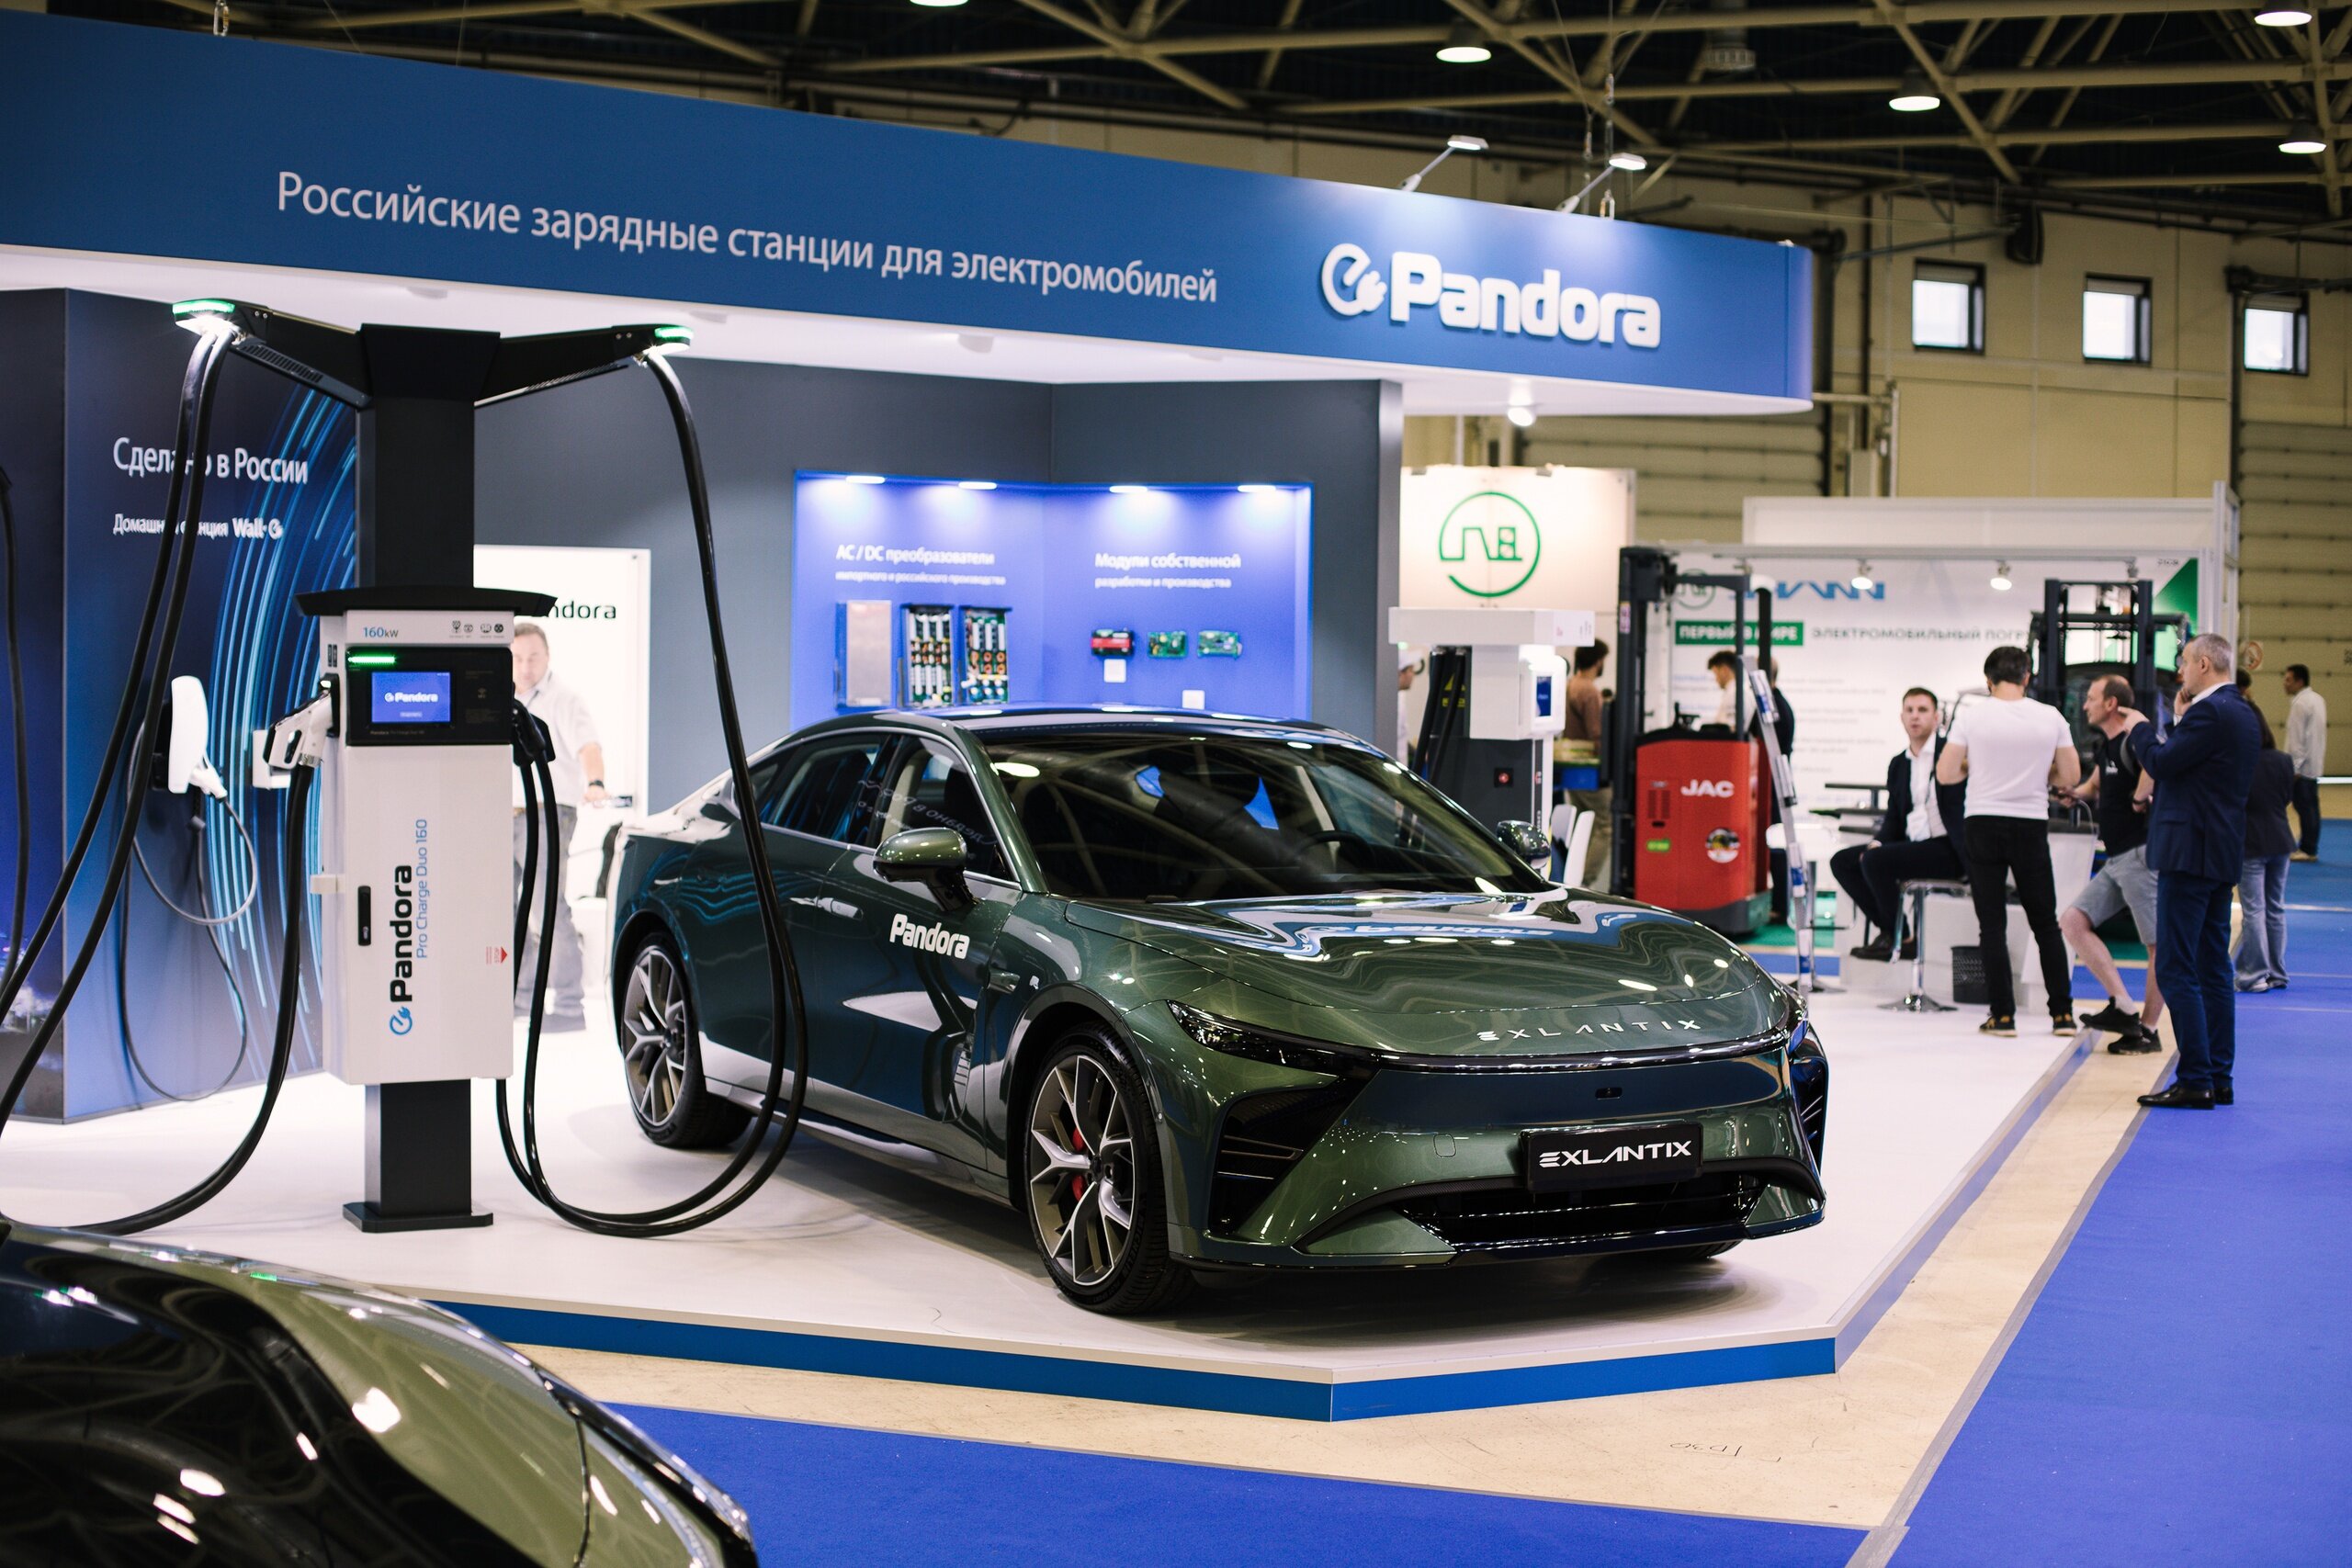 Премиальный бренд Exlantix представил в России свой первый автомобиль: солидный электрический седан ES